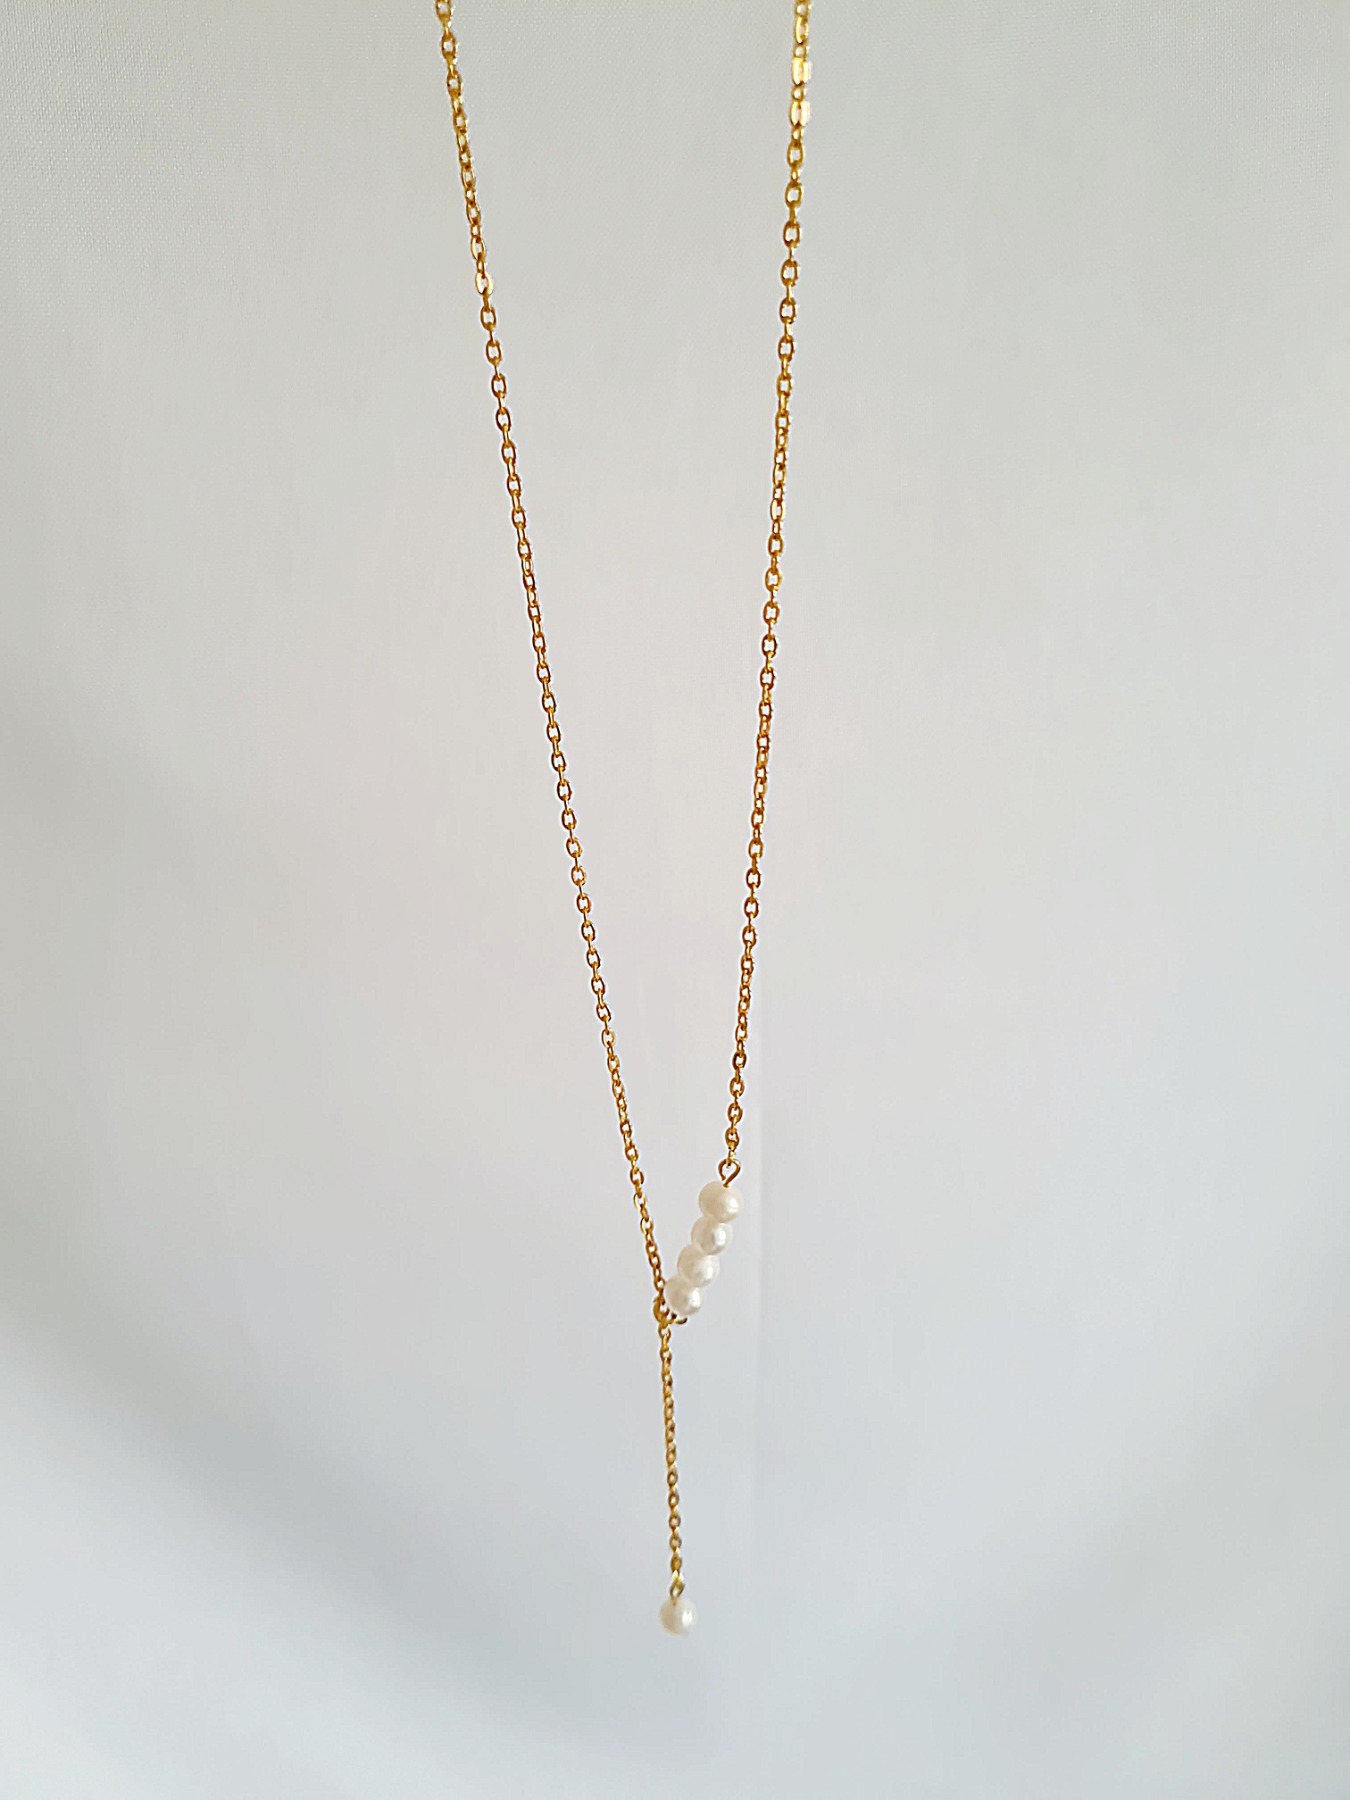 Vergoldete Kette goldene Kette Süßwasser Perlen Edelstahl Halskette 5